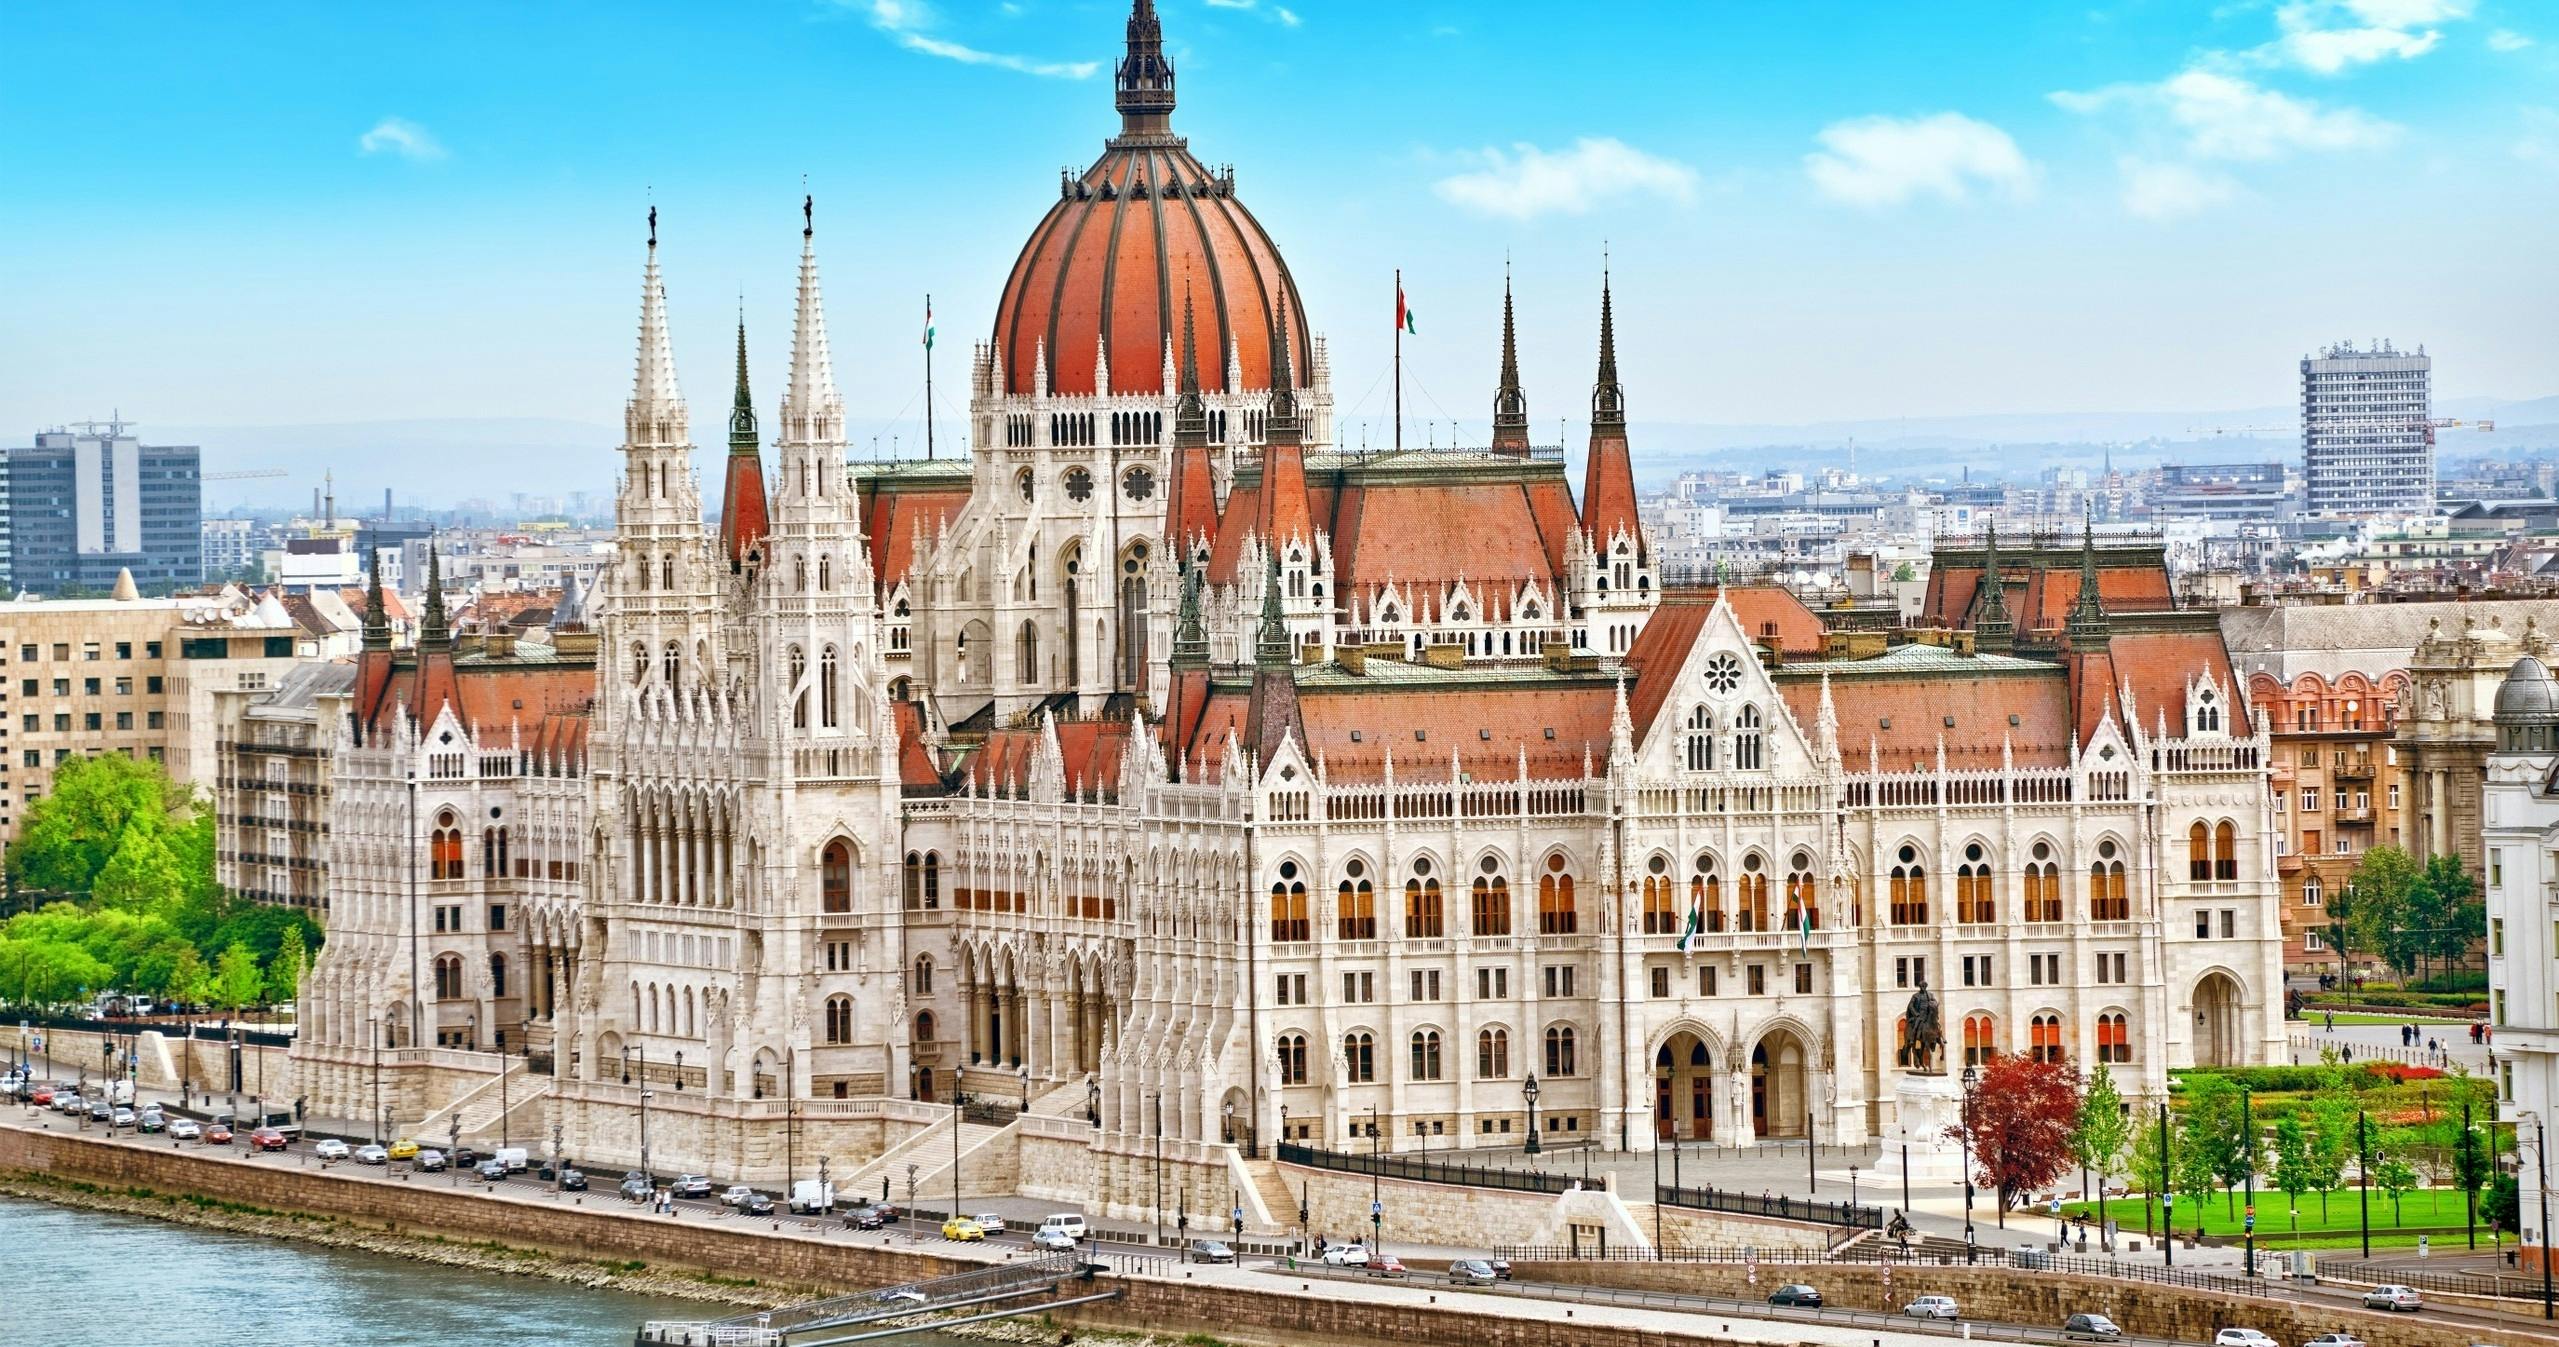 Audiogeführte Tour durch das ungarische Parlament